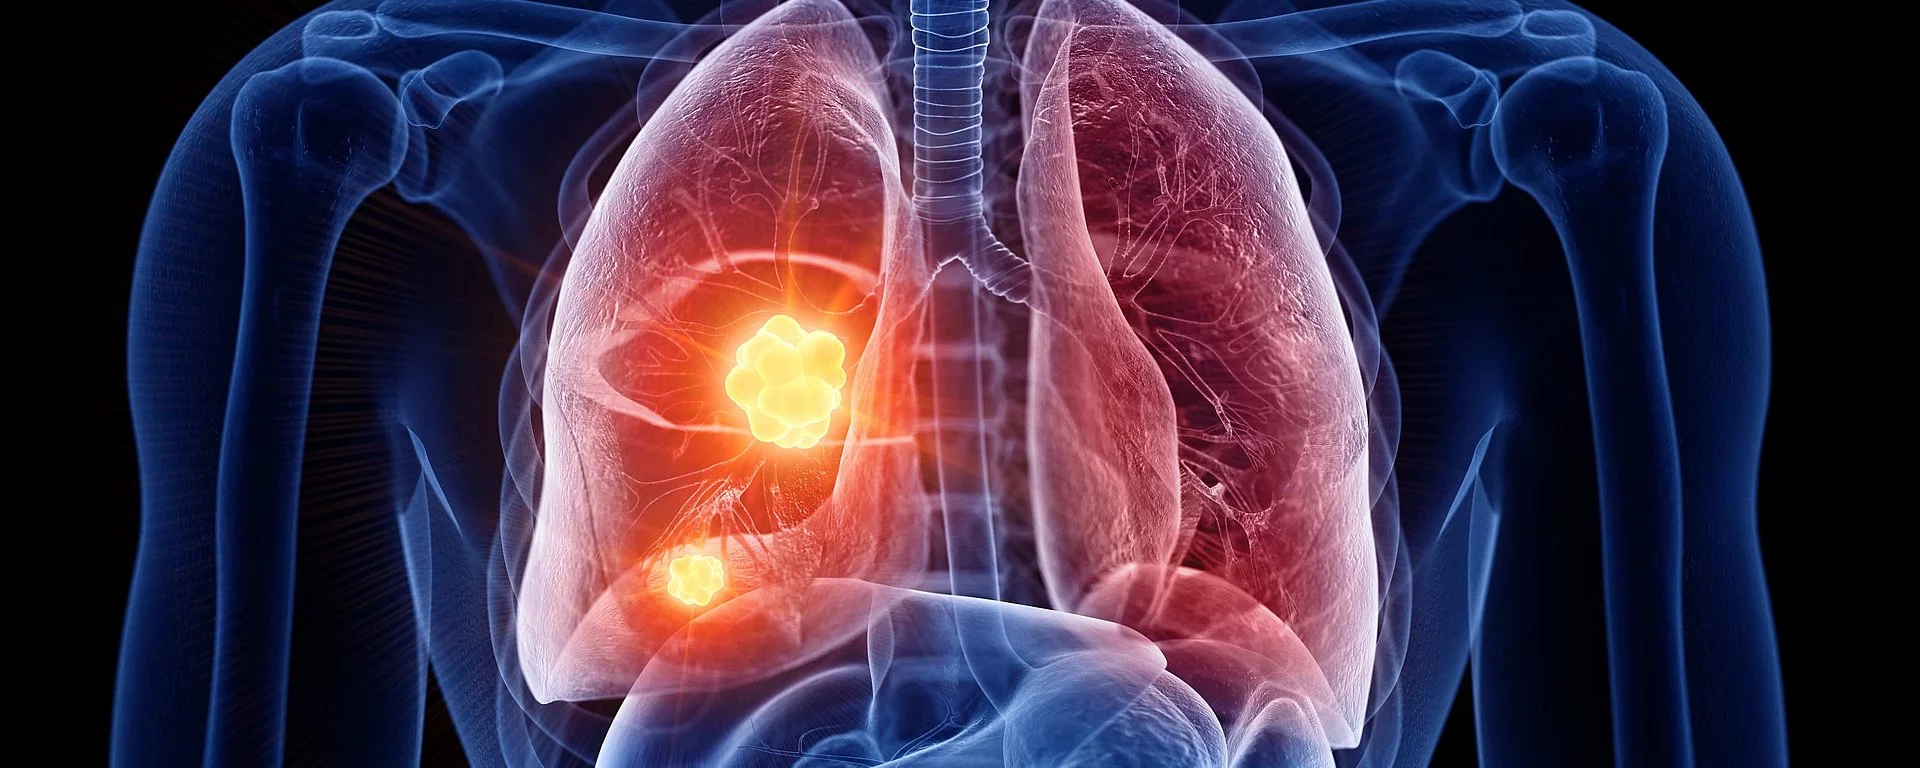 3d gerenderte, medizinisch korrekte Darstellung von Lungenkrebs